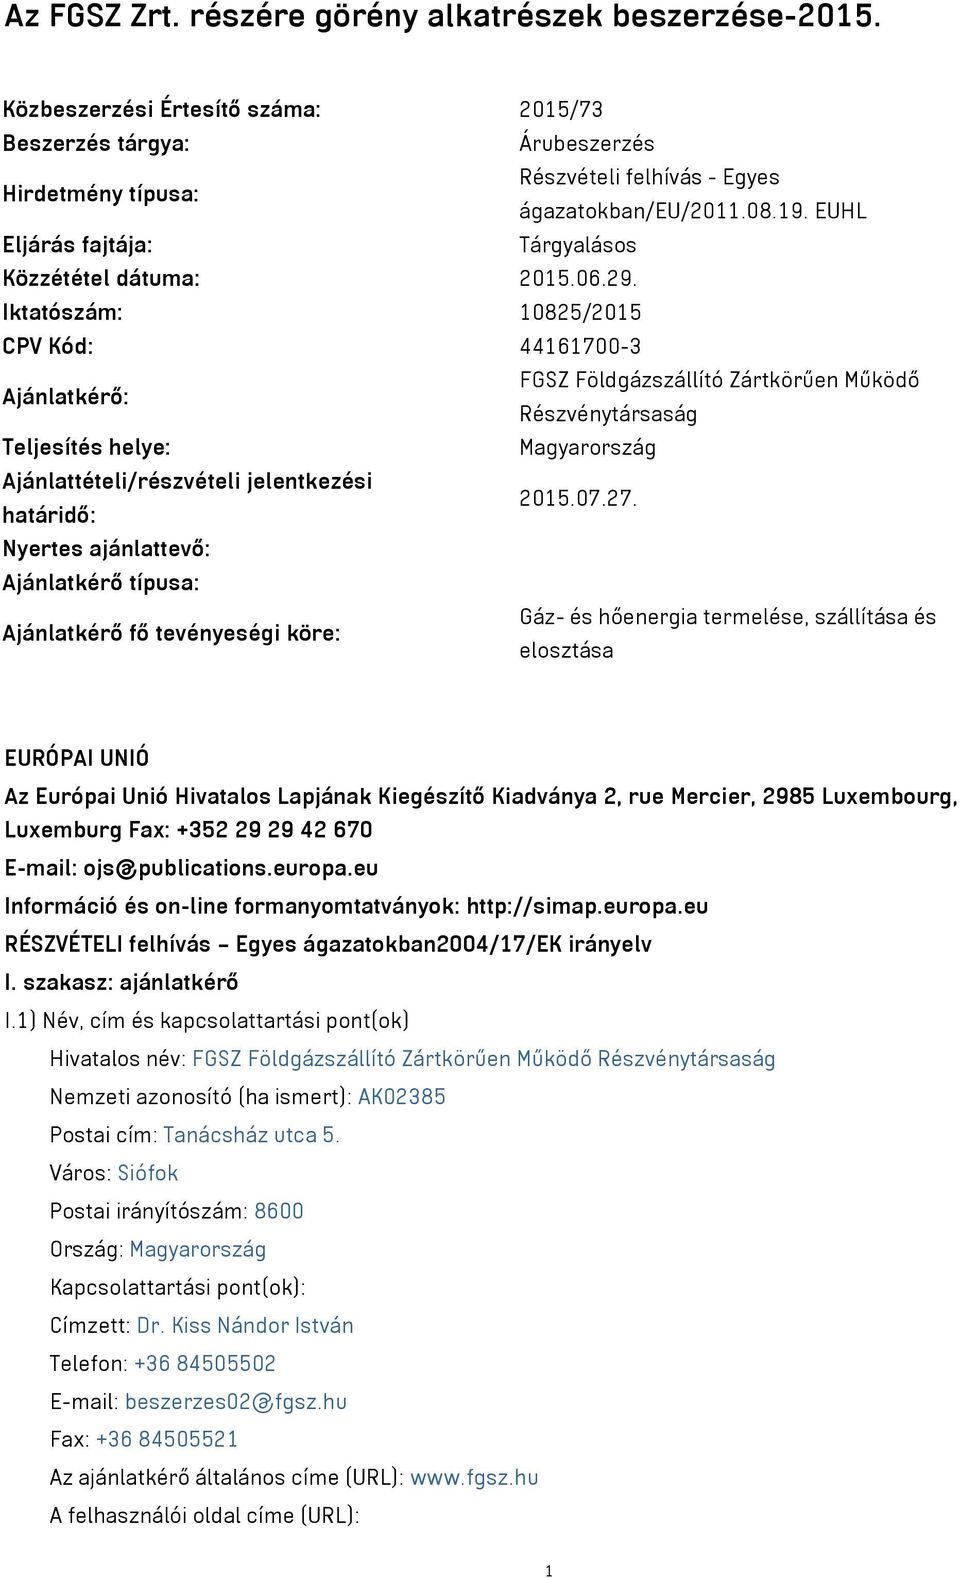 Iktatószám: 10825/2015 CPV Kód: 44161700-3 Ajánlatkérő: FGSZ Földgázszállító Zártkörűen Működő Részvénytársaság Teljesítés helye: Magyarország Ajánlattételi/részvételi jelentkezési határidő: 2015.07.